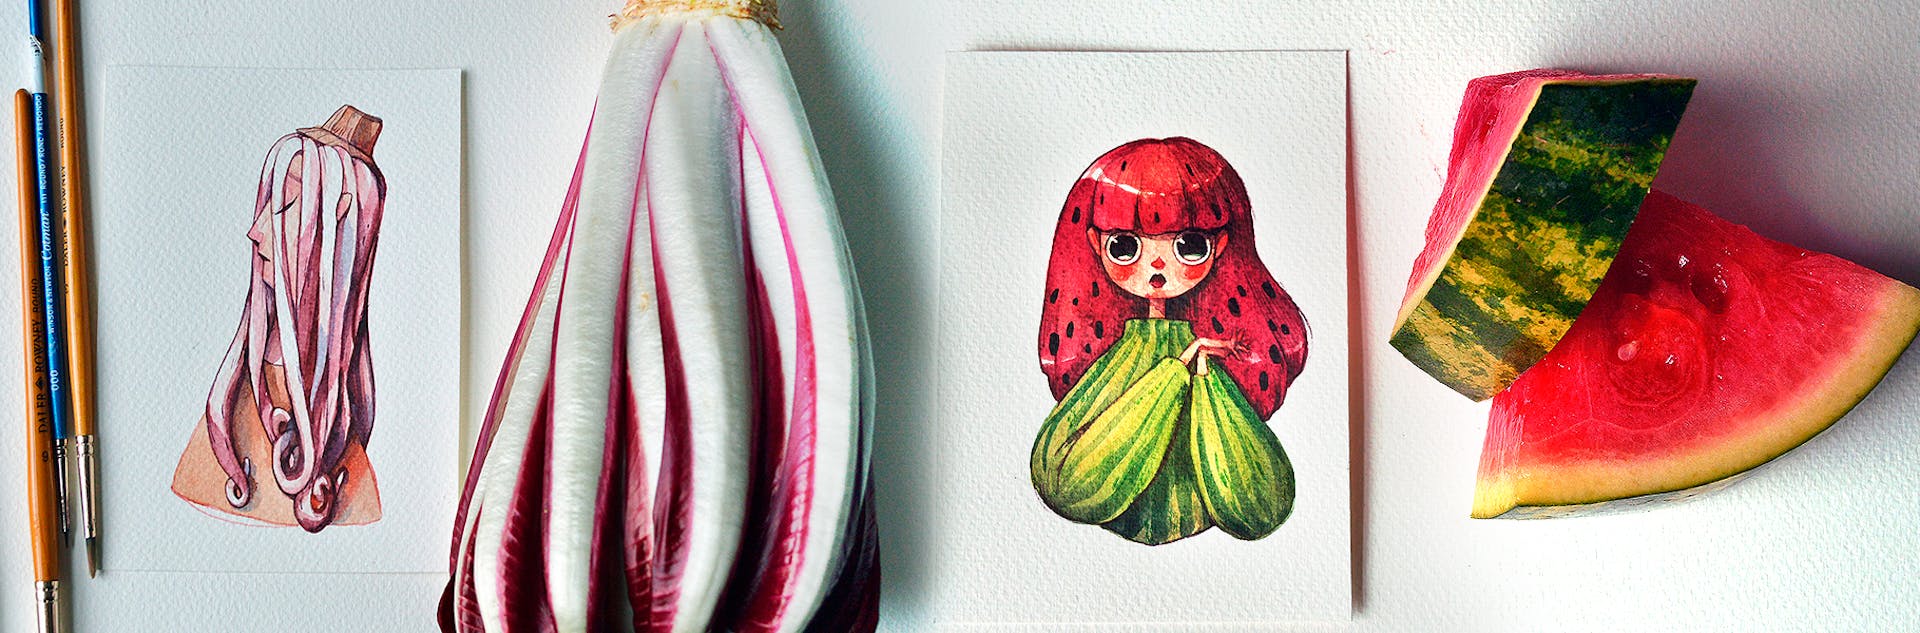 Esta artista convirtió frutas y vegetales en increíbles personajes